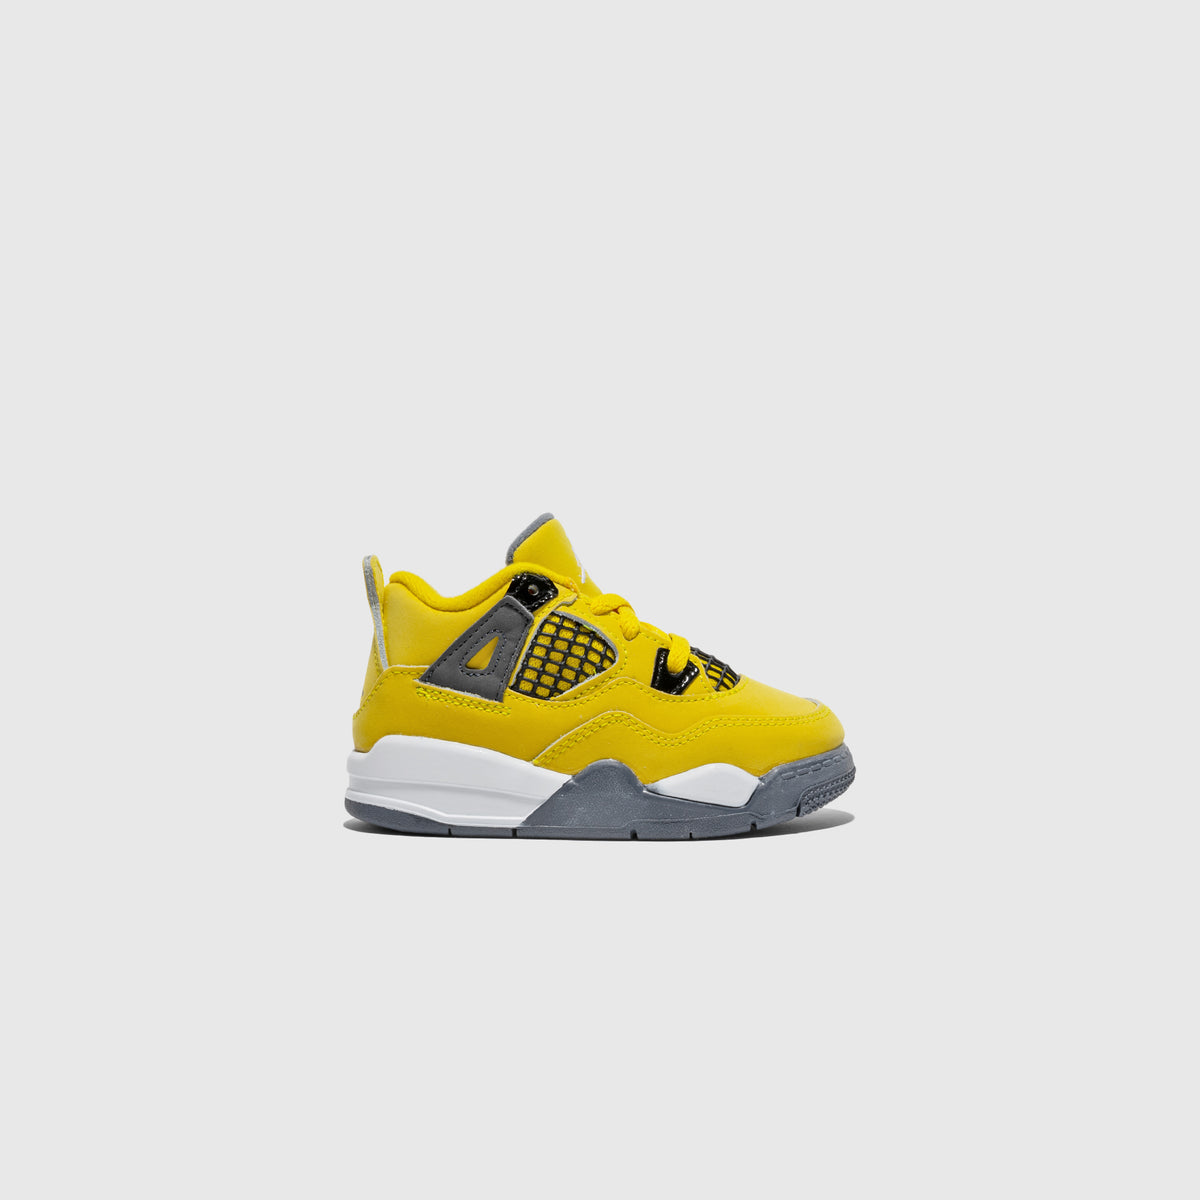  Nike Toddler Air Jordan 4 Retro Td Lightning 2021, Tour  Yellow/Dark Blue Grey, 4C